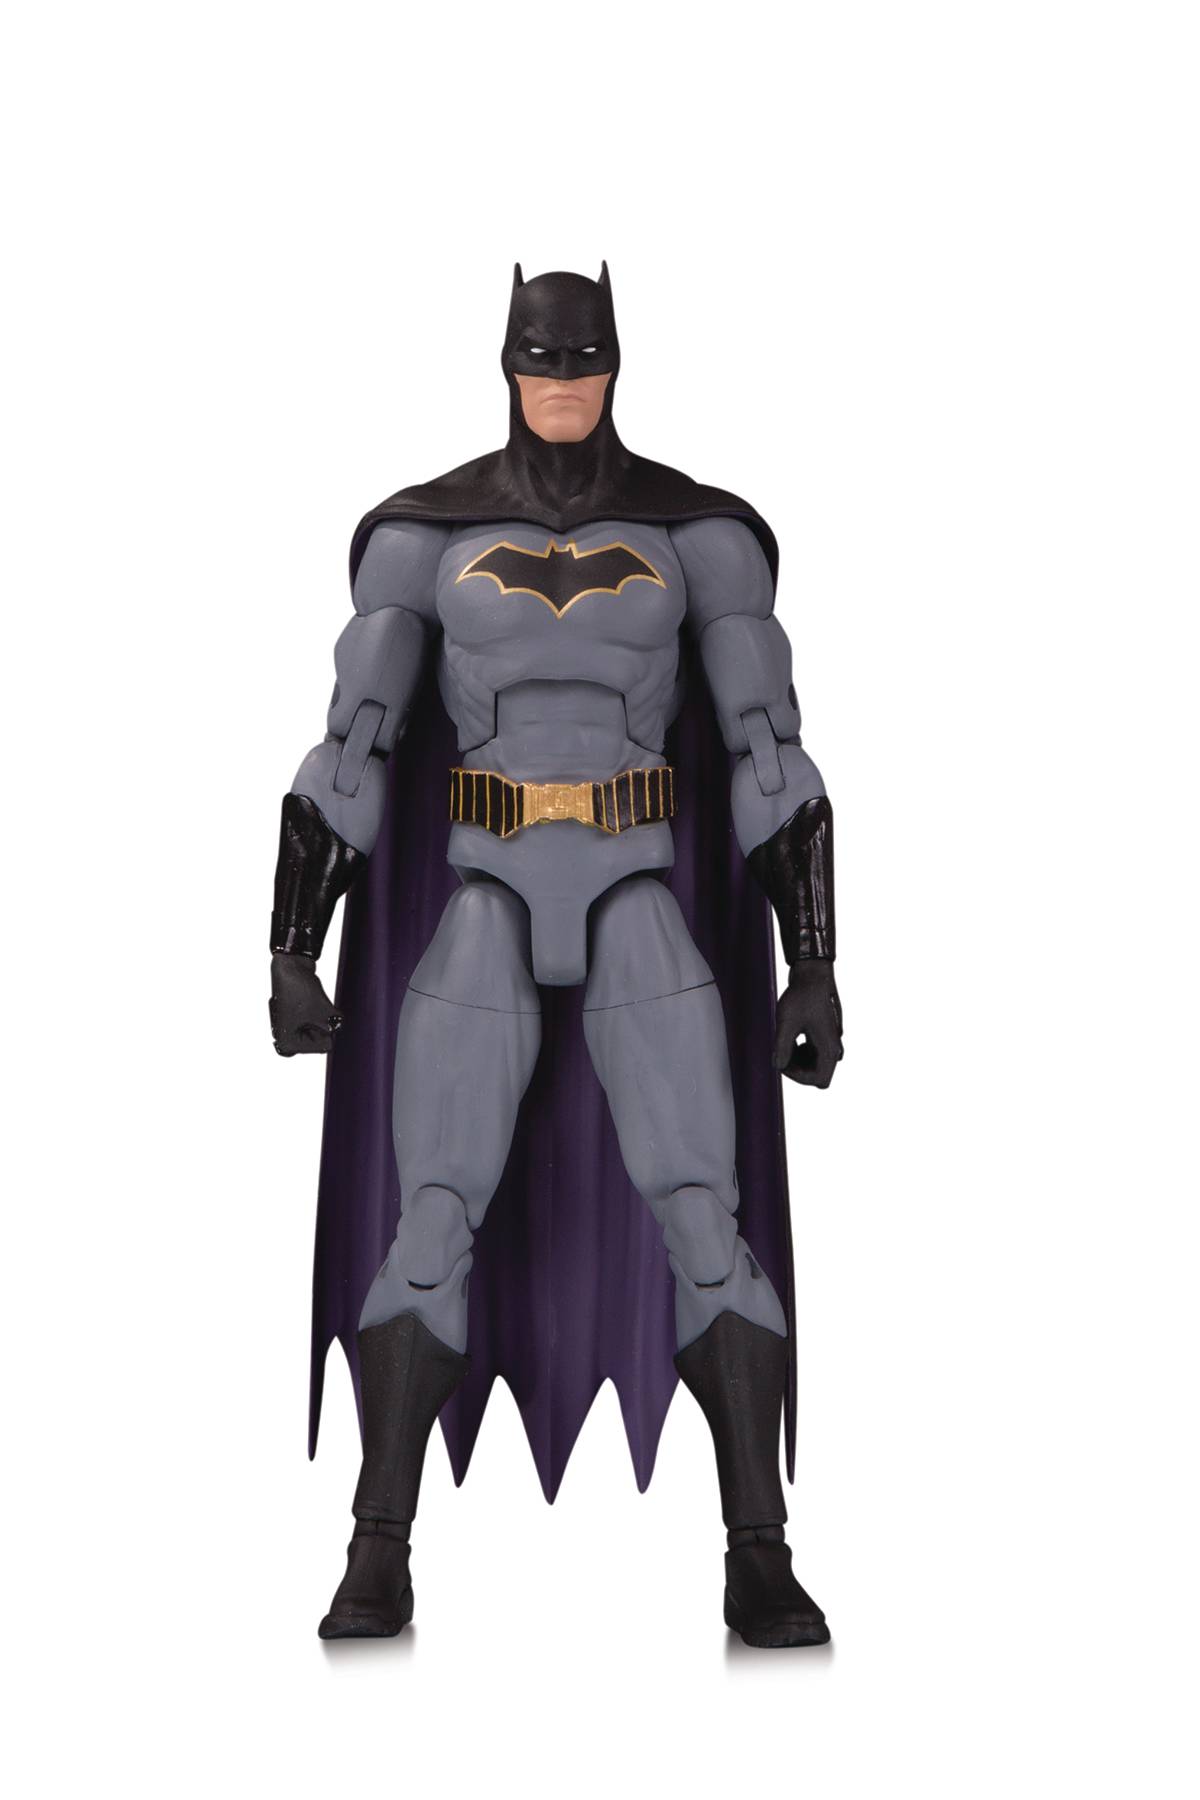 DC Essentials Batman Rebirth Version 2 Action Figure